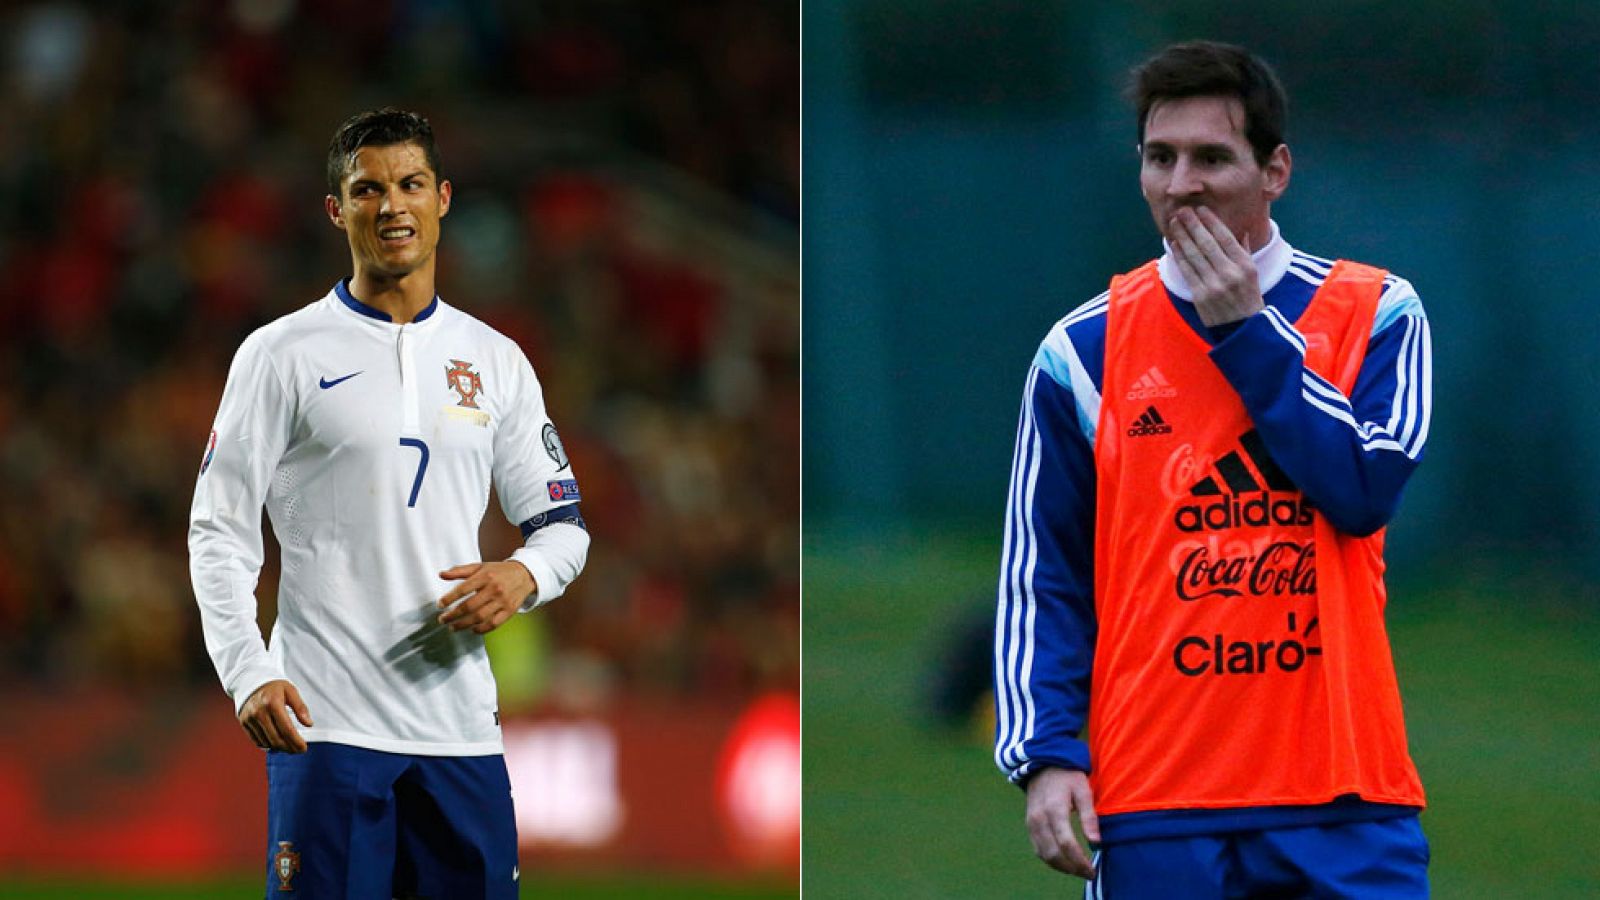 Los dos mejores jugadores del mundo se miden en un amistoso con sus selecciones.